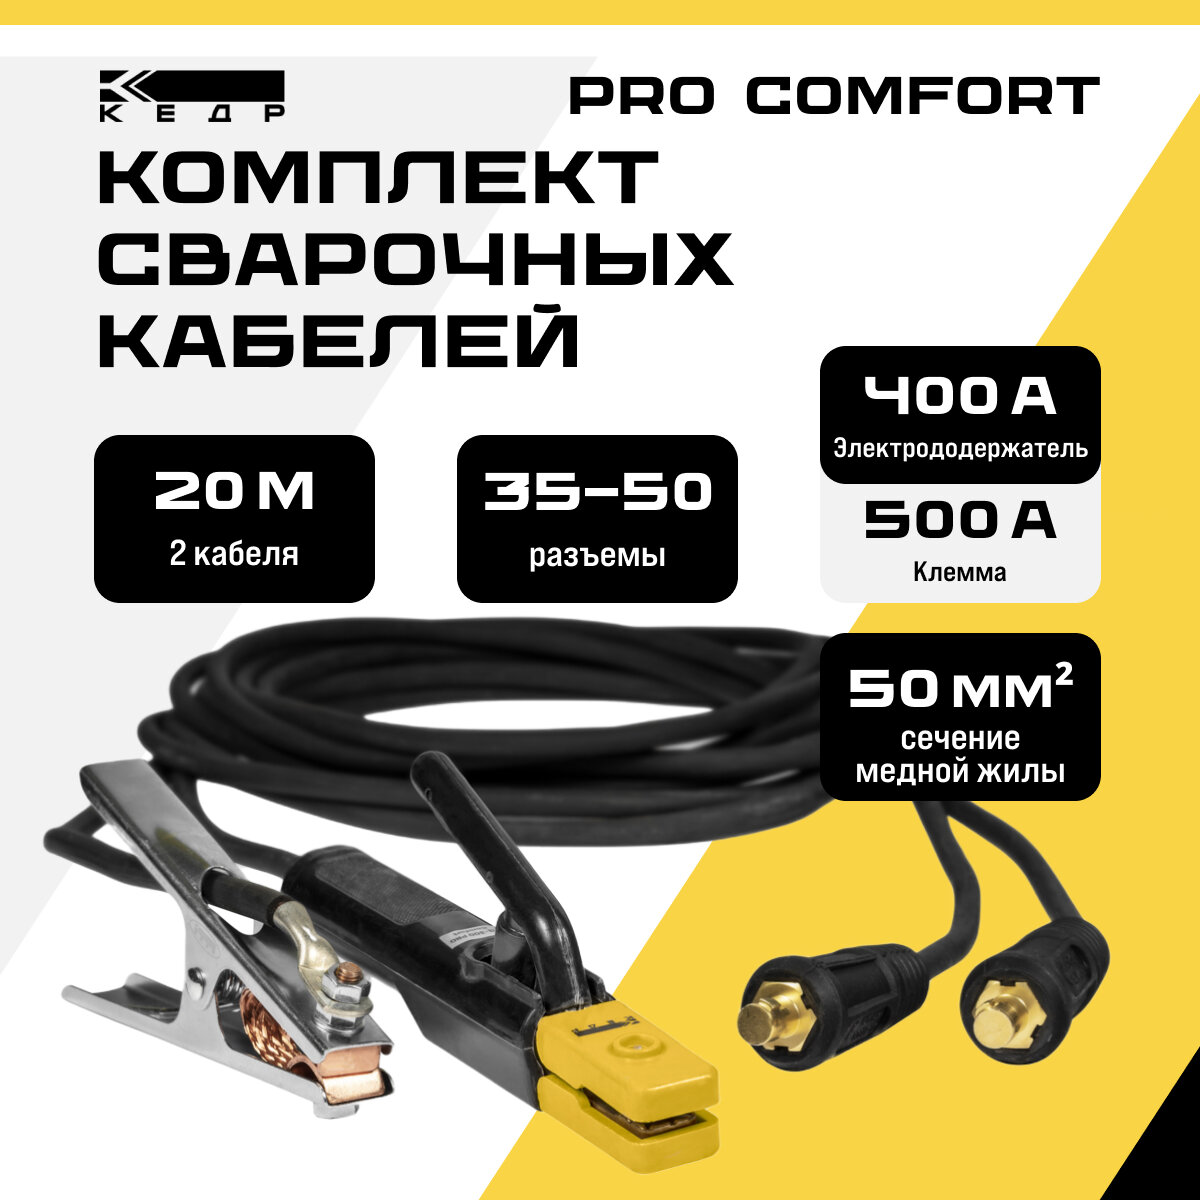 Комплект сварочных кабелей 20м 400A электрододержатель и клемма заземления кедр 35-50/1*50 PRO Comfort 8006586